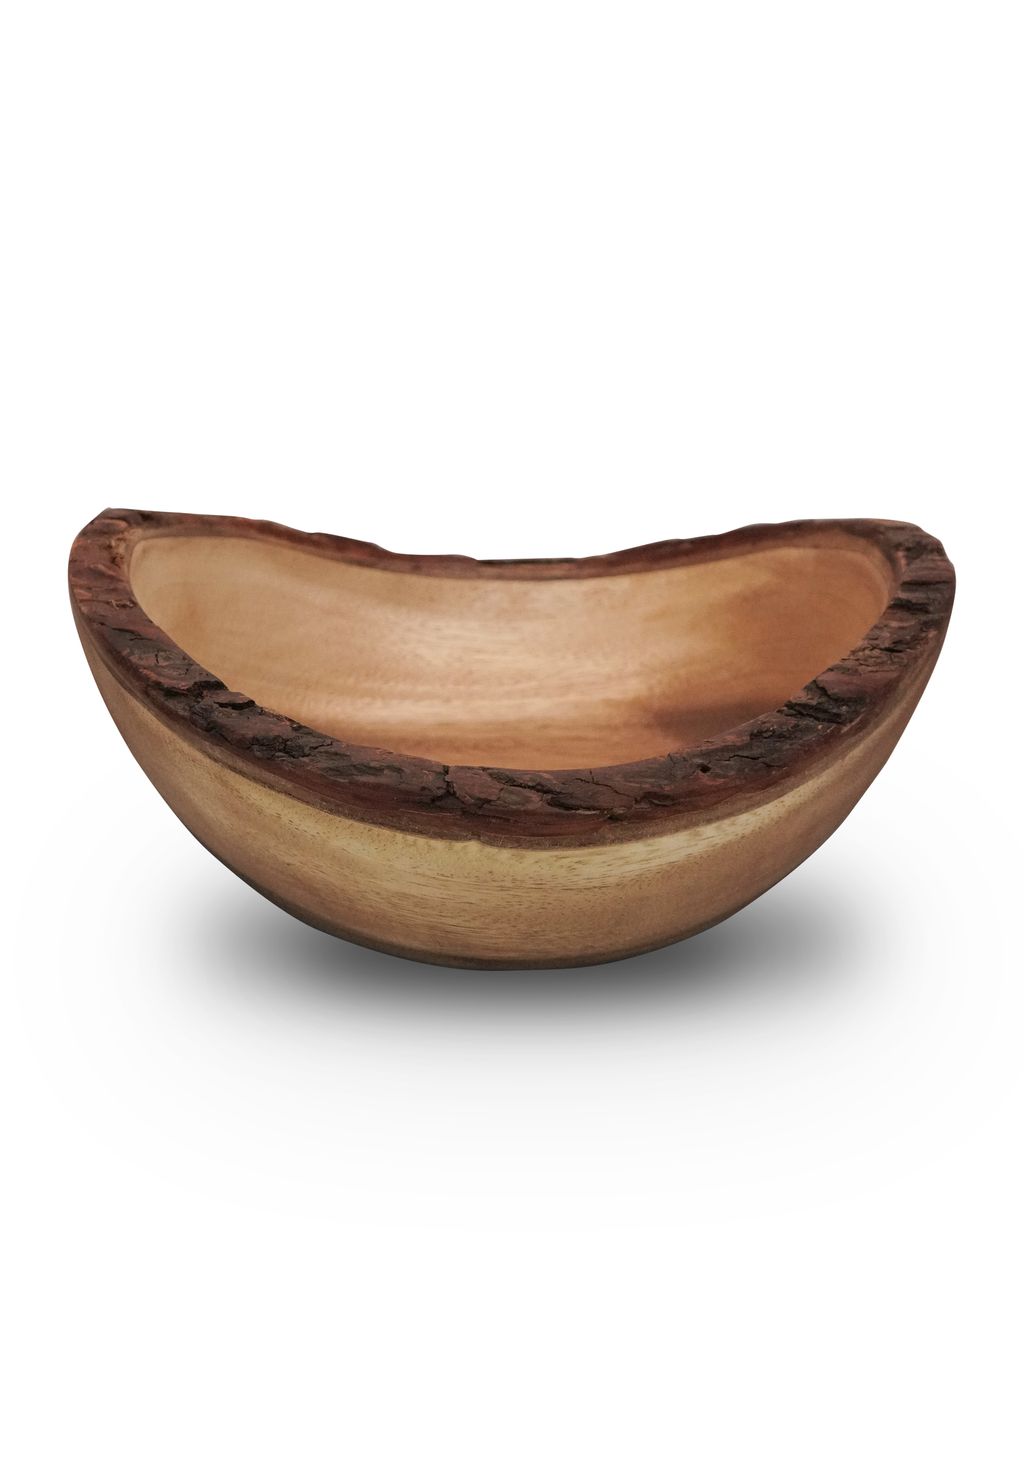 Rustic Natural Wood Bark Bowl.jpg